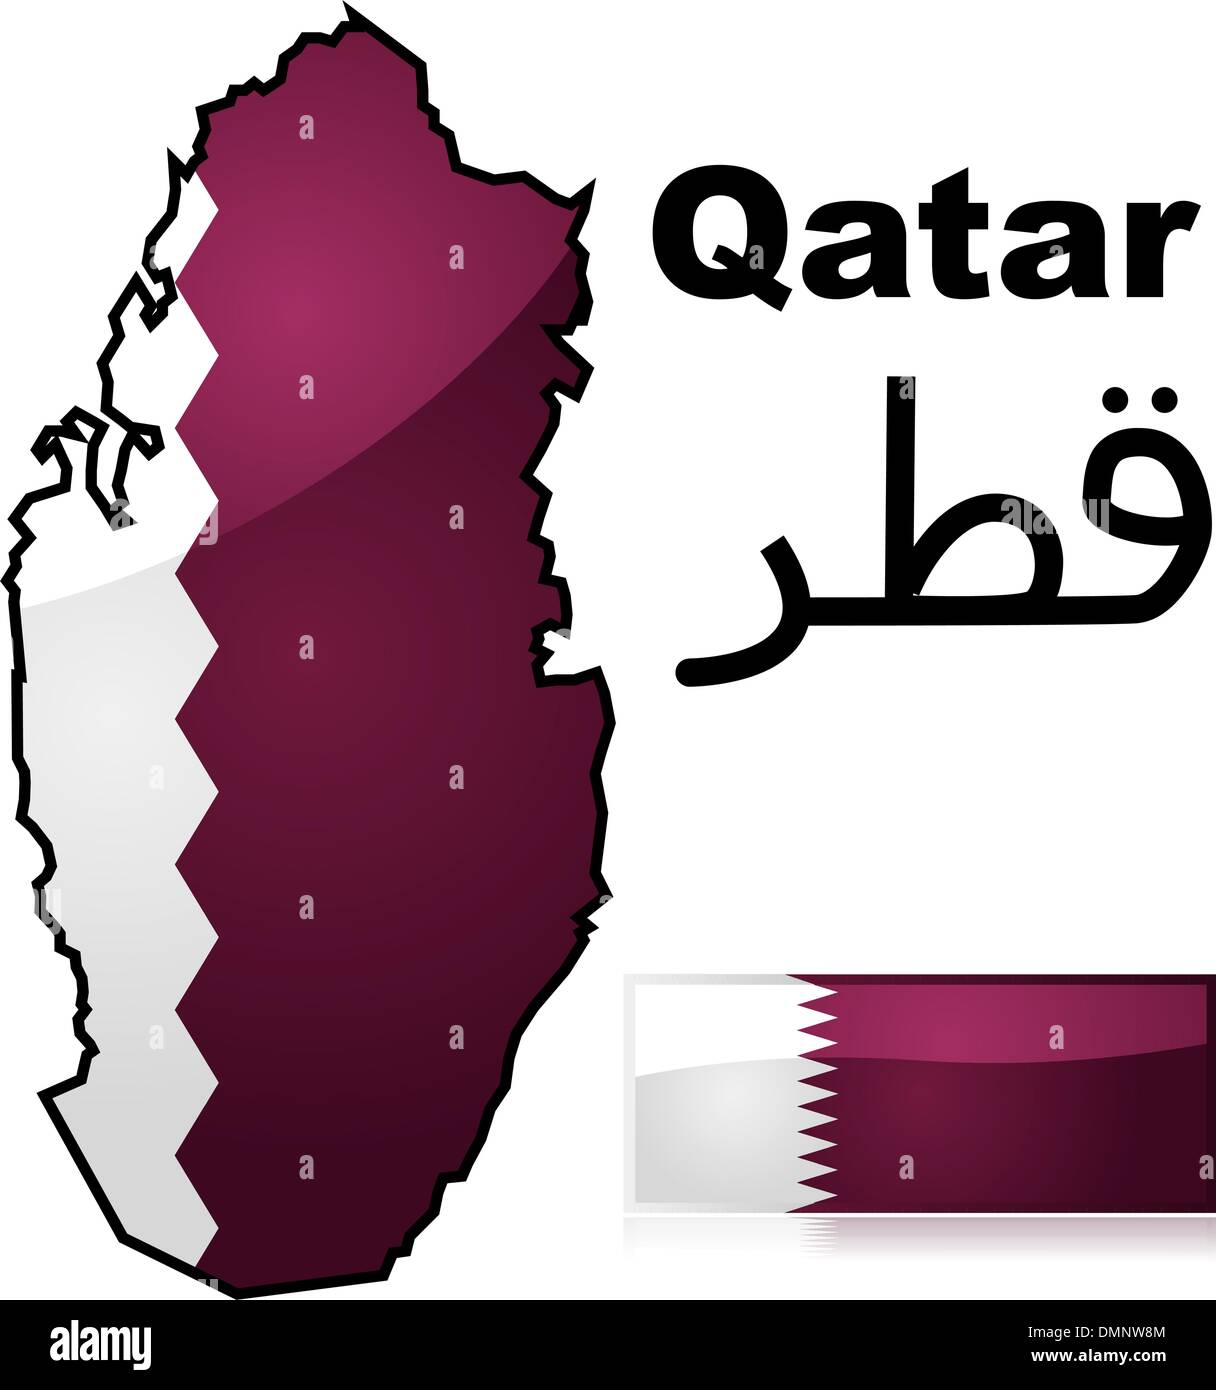 Mappa di Qatar e flag Illustrazione Vettoriale